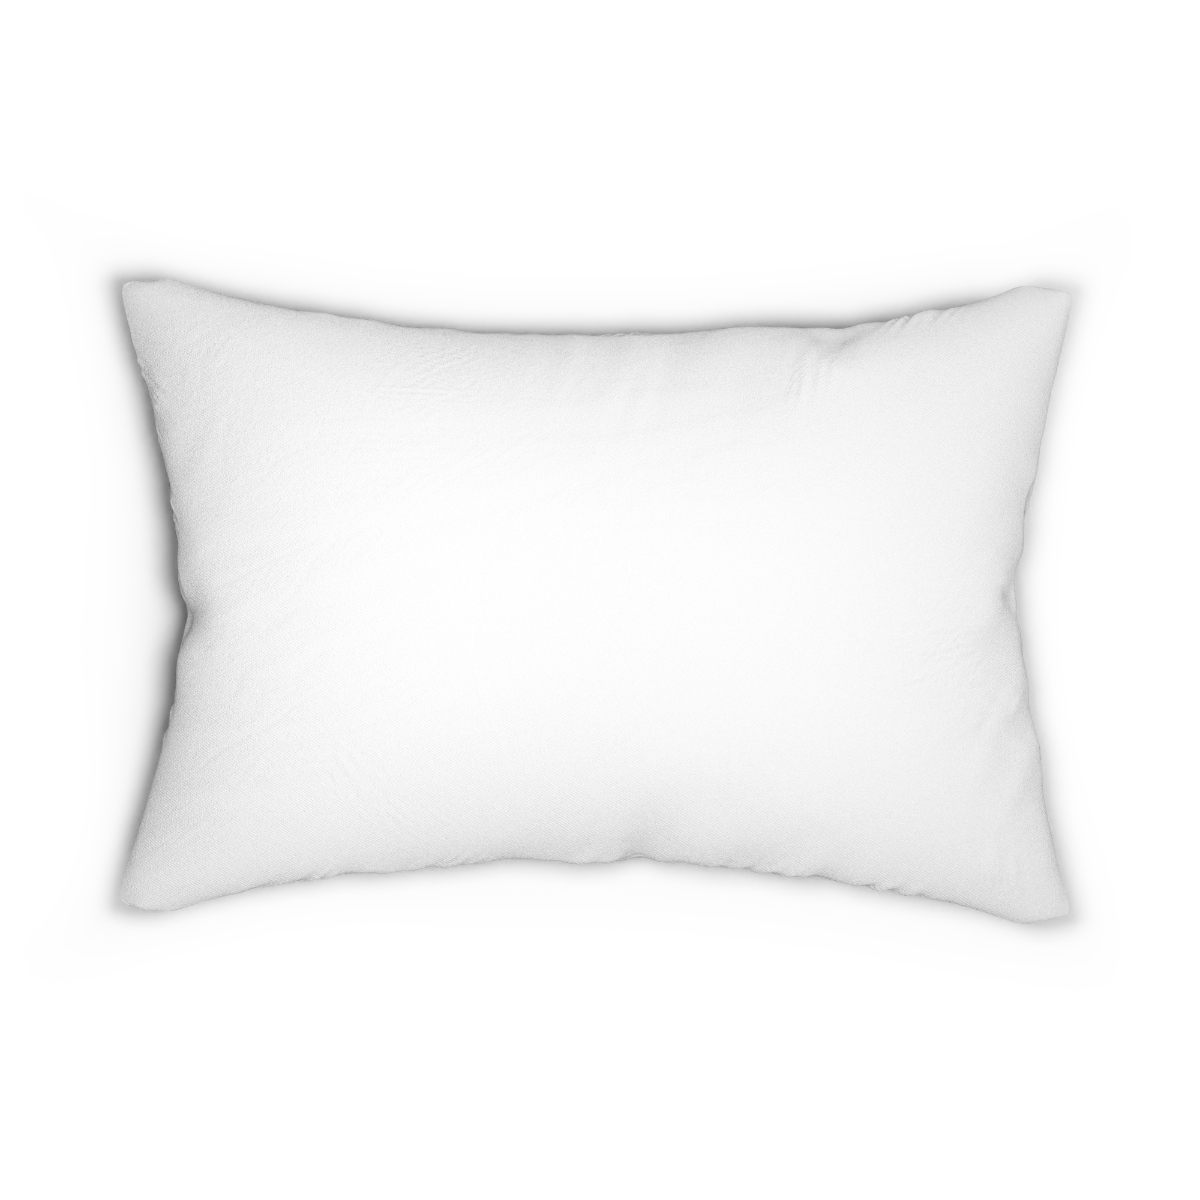 Stone & Spoon Spun Polyester Lumbar Pillow product thumbnail image